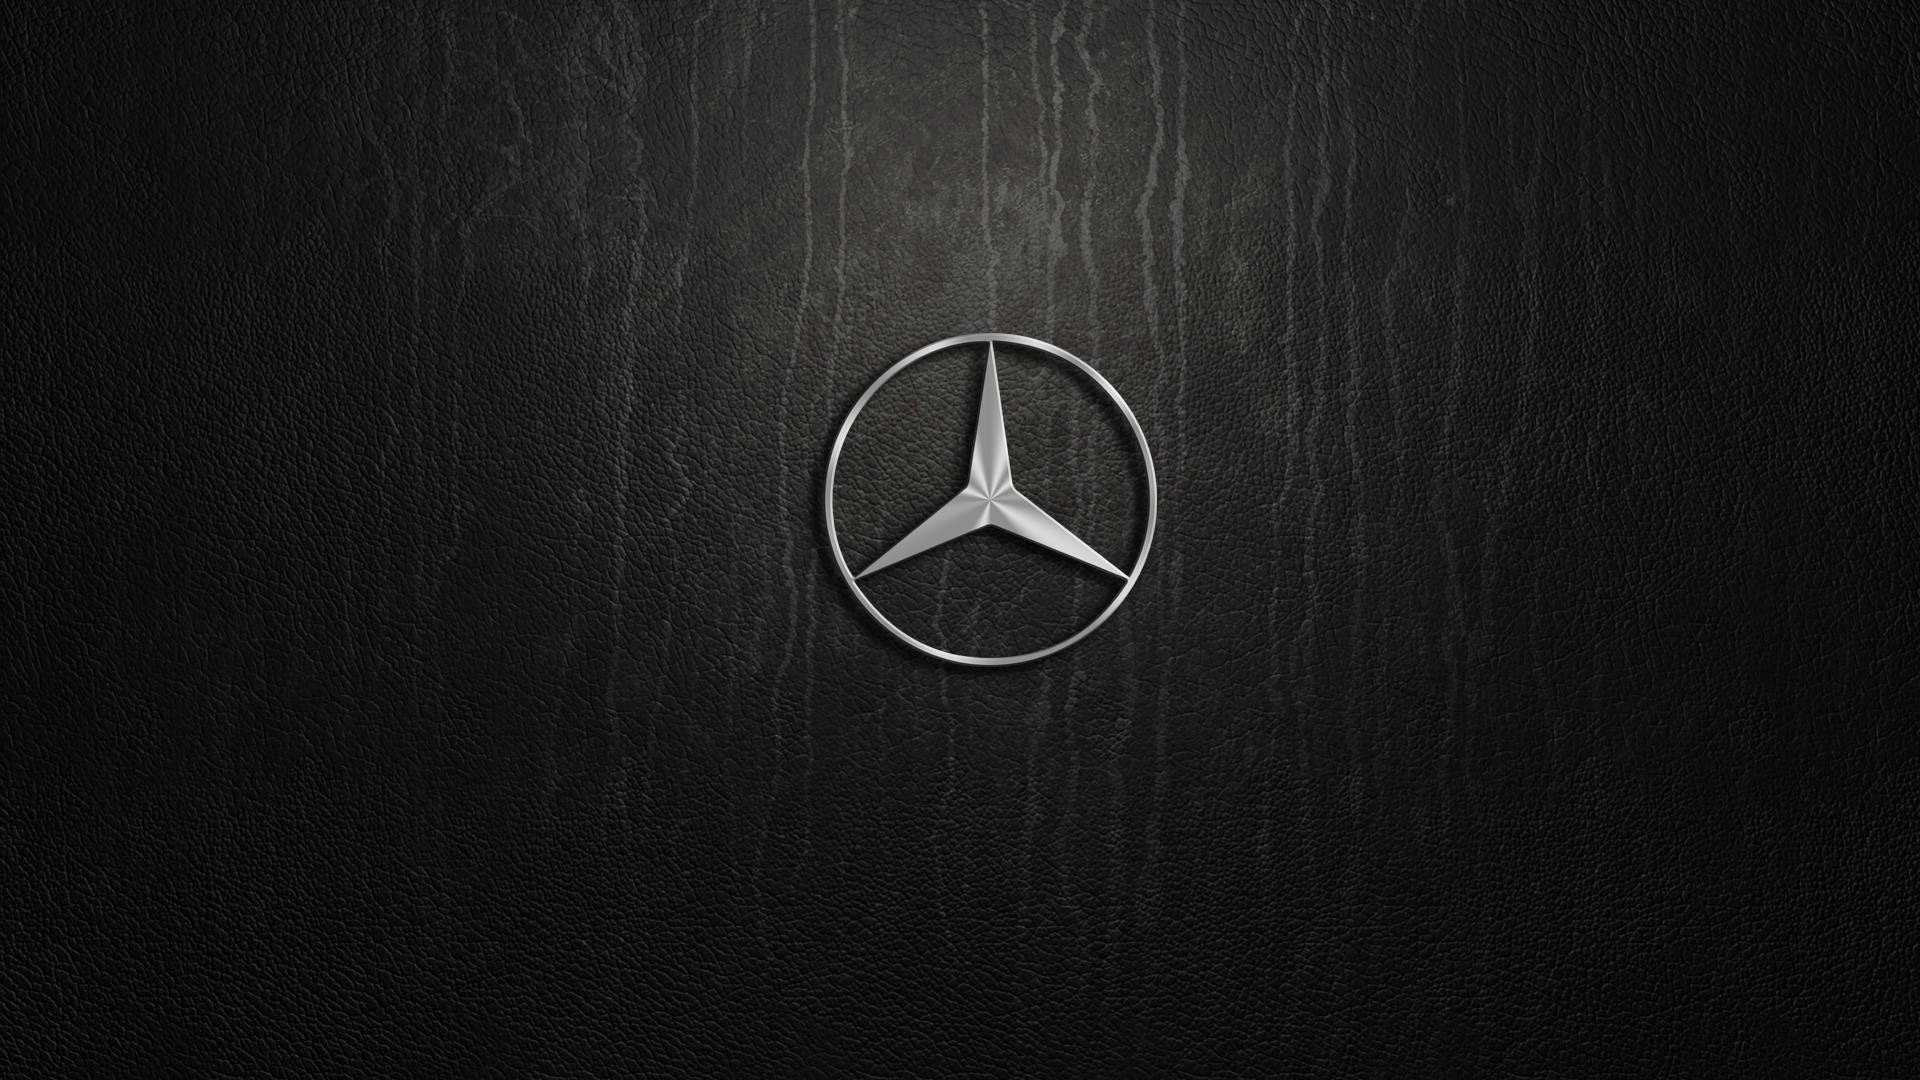 Fondode Pantalla Del Logo De Mercedes Para Escritorio. Fondo de pantalla